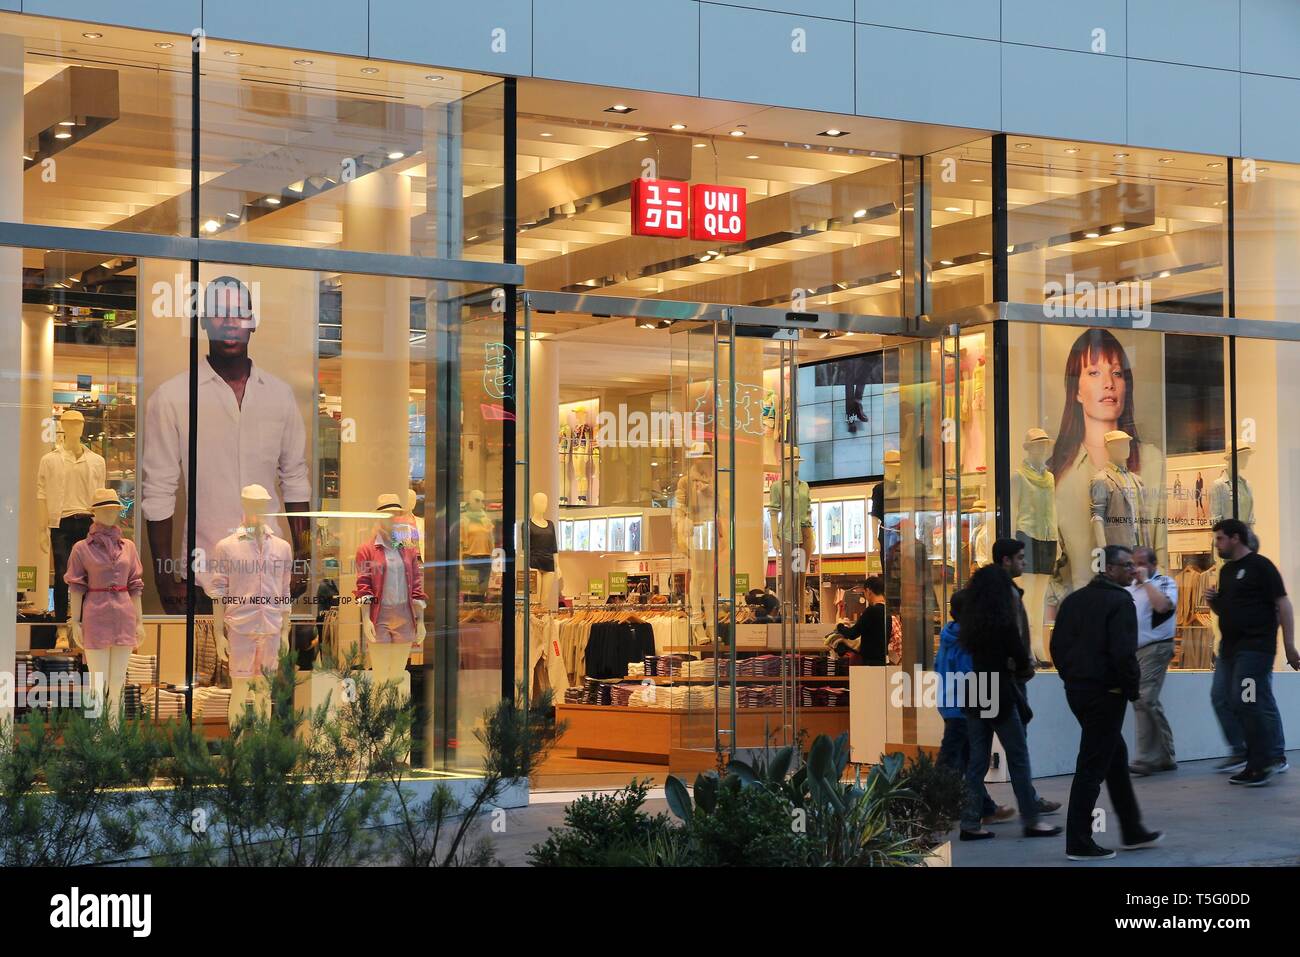 SAN FRANCISCO, USA - April 8, 2014: Leute gehen von Uniqlo Fashion Store in  San Francisco, USA. Uniqlo ist ein Japanischer Mode Marke mit 1.400 Filialen  in Stockfotografie - Alamy